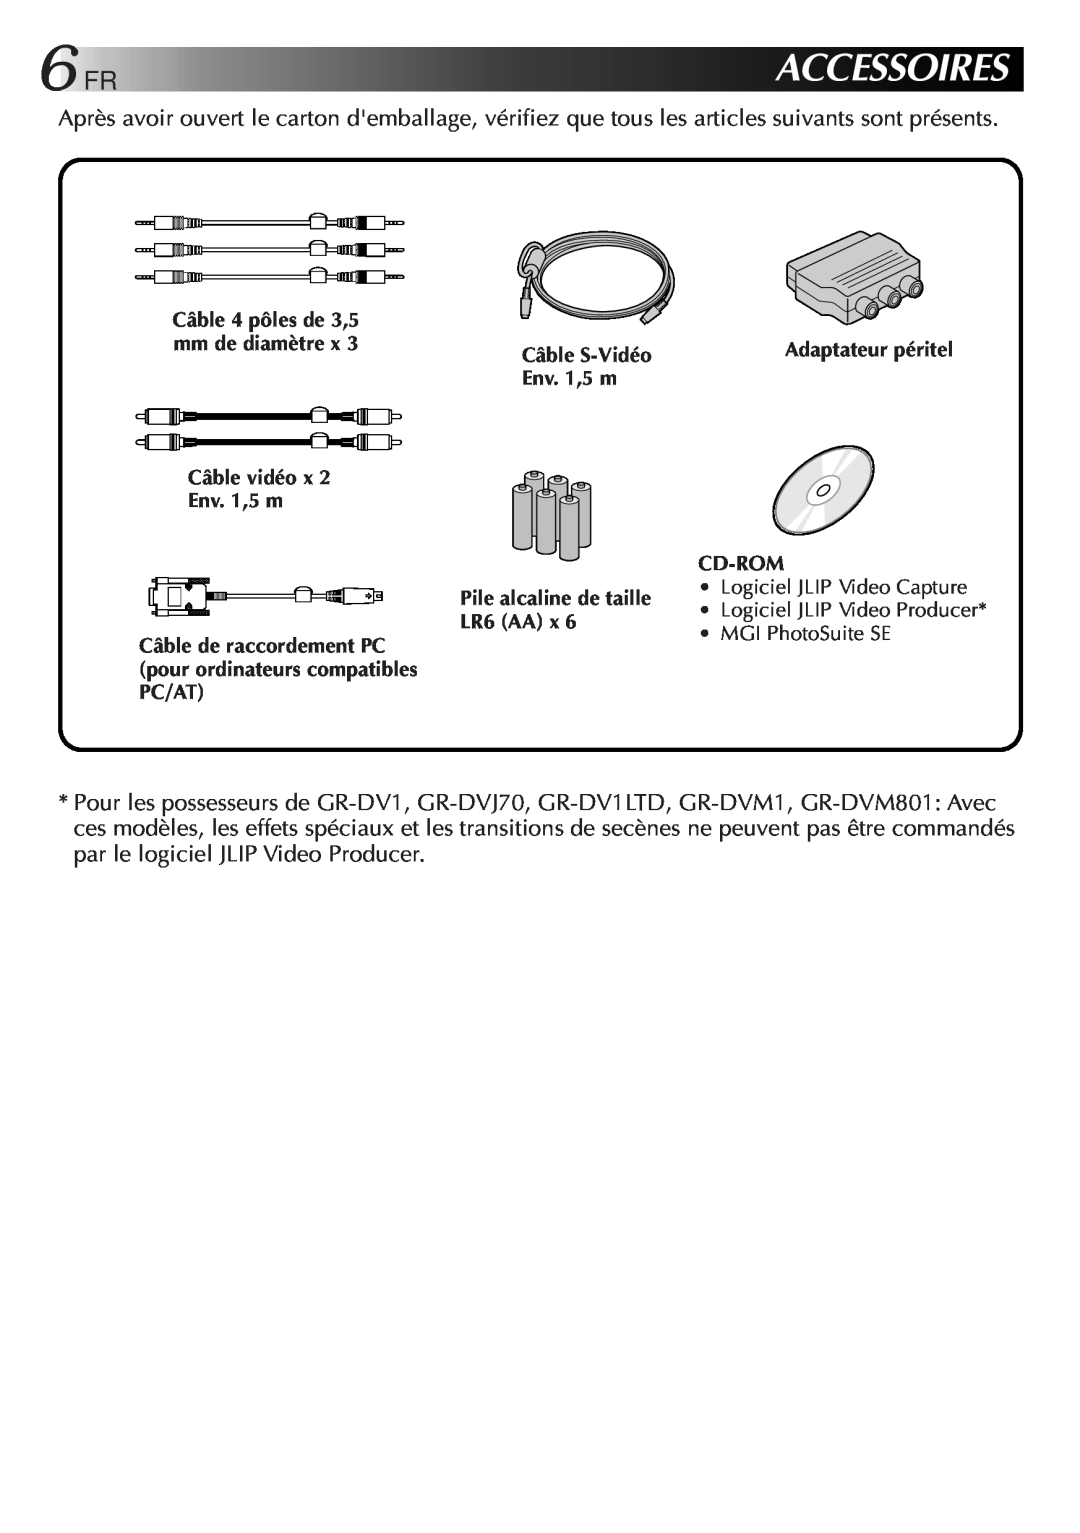 JVC GV-CB3E manual 6FRACCESSOIRES, Câble vidéo x Env. 1,5 m, Câble S-Vidéo, Cd-Rom, Pile alcaline de taille, LR6 AA x 